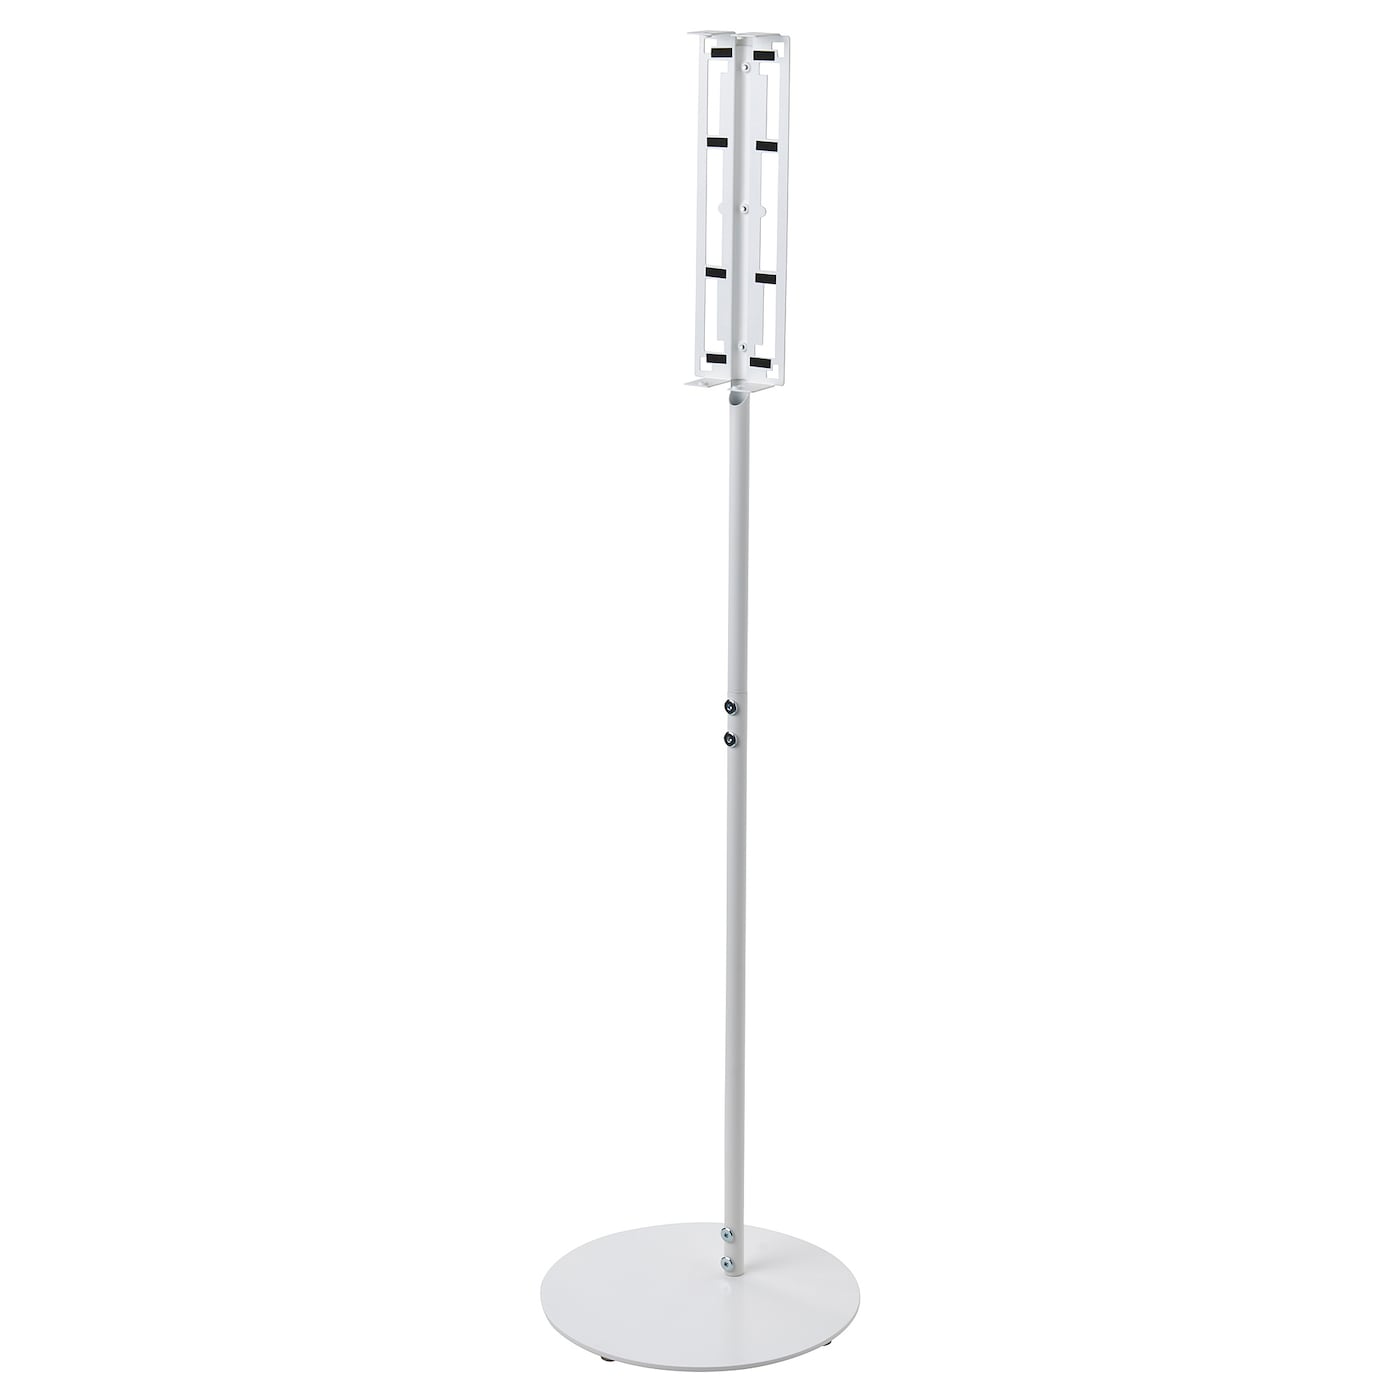 Напольная подставка для колонок  - SYMFONISK IKEA/ СУМФОНИСК ИКЕА,  117з30 см, белый